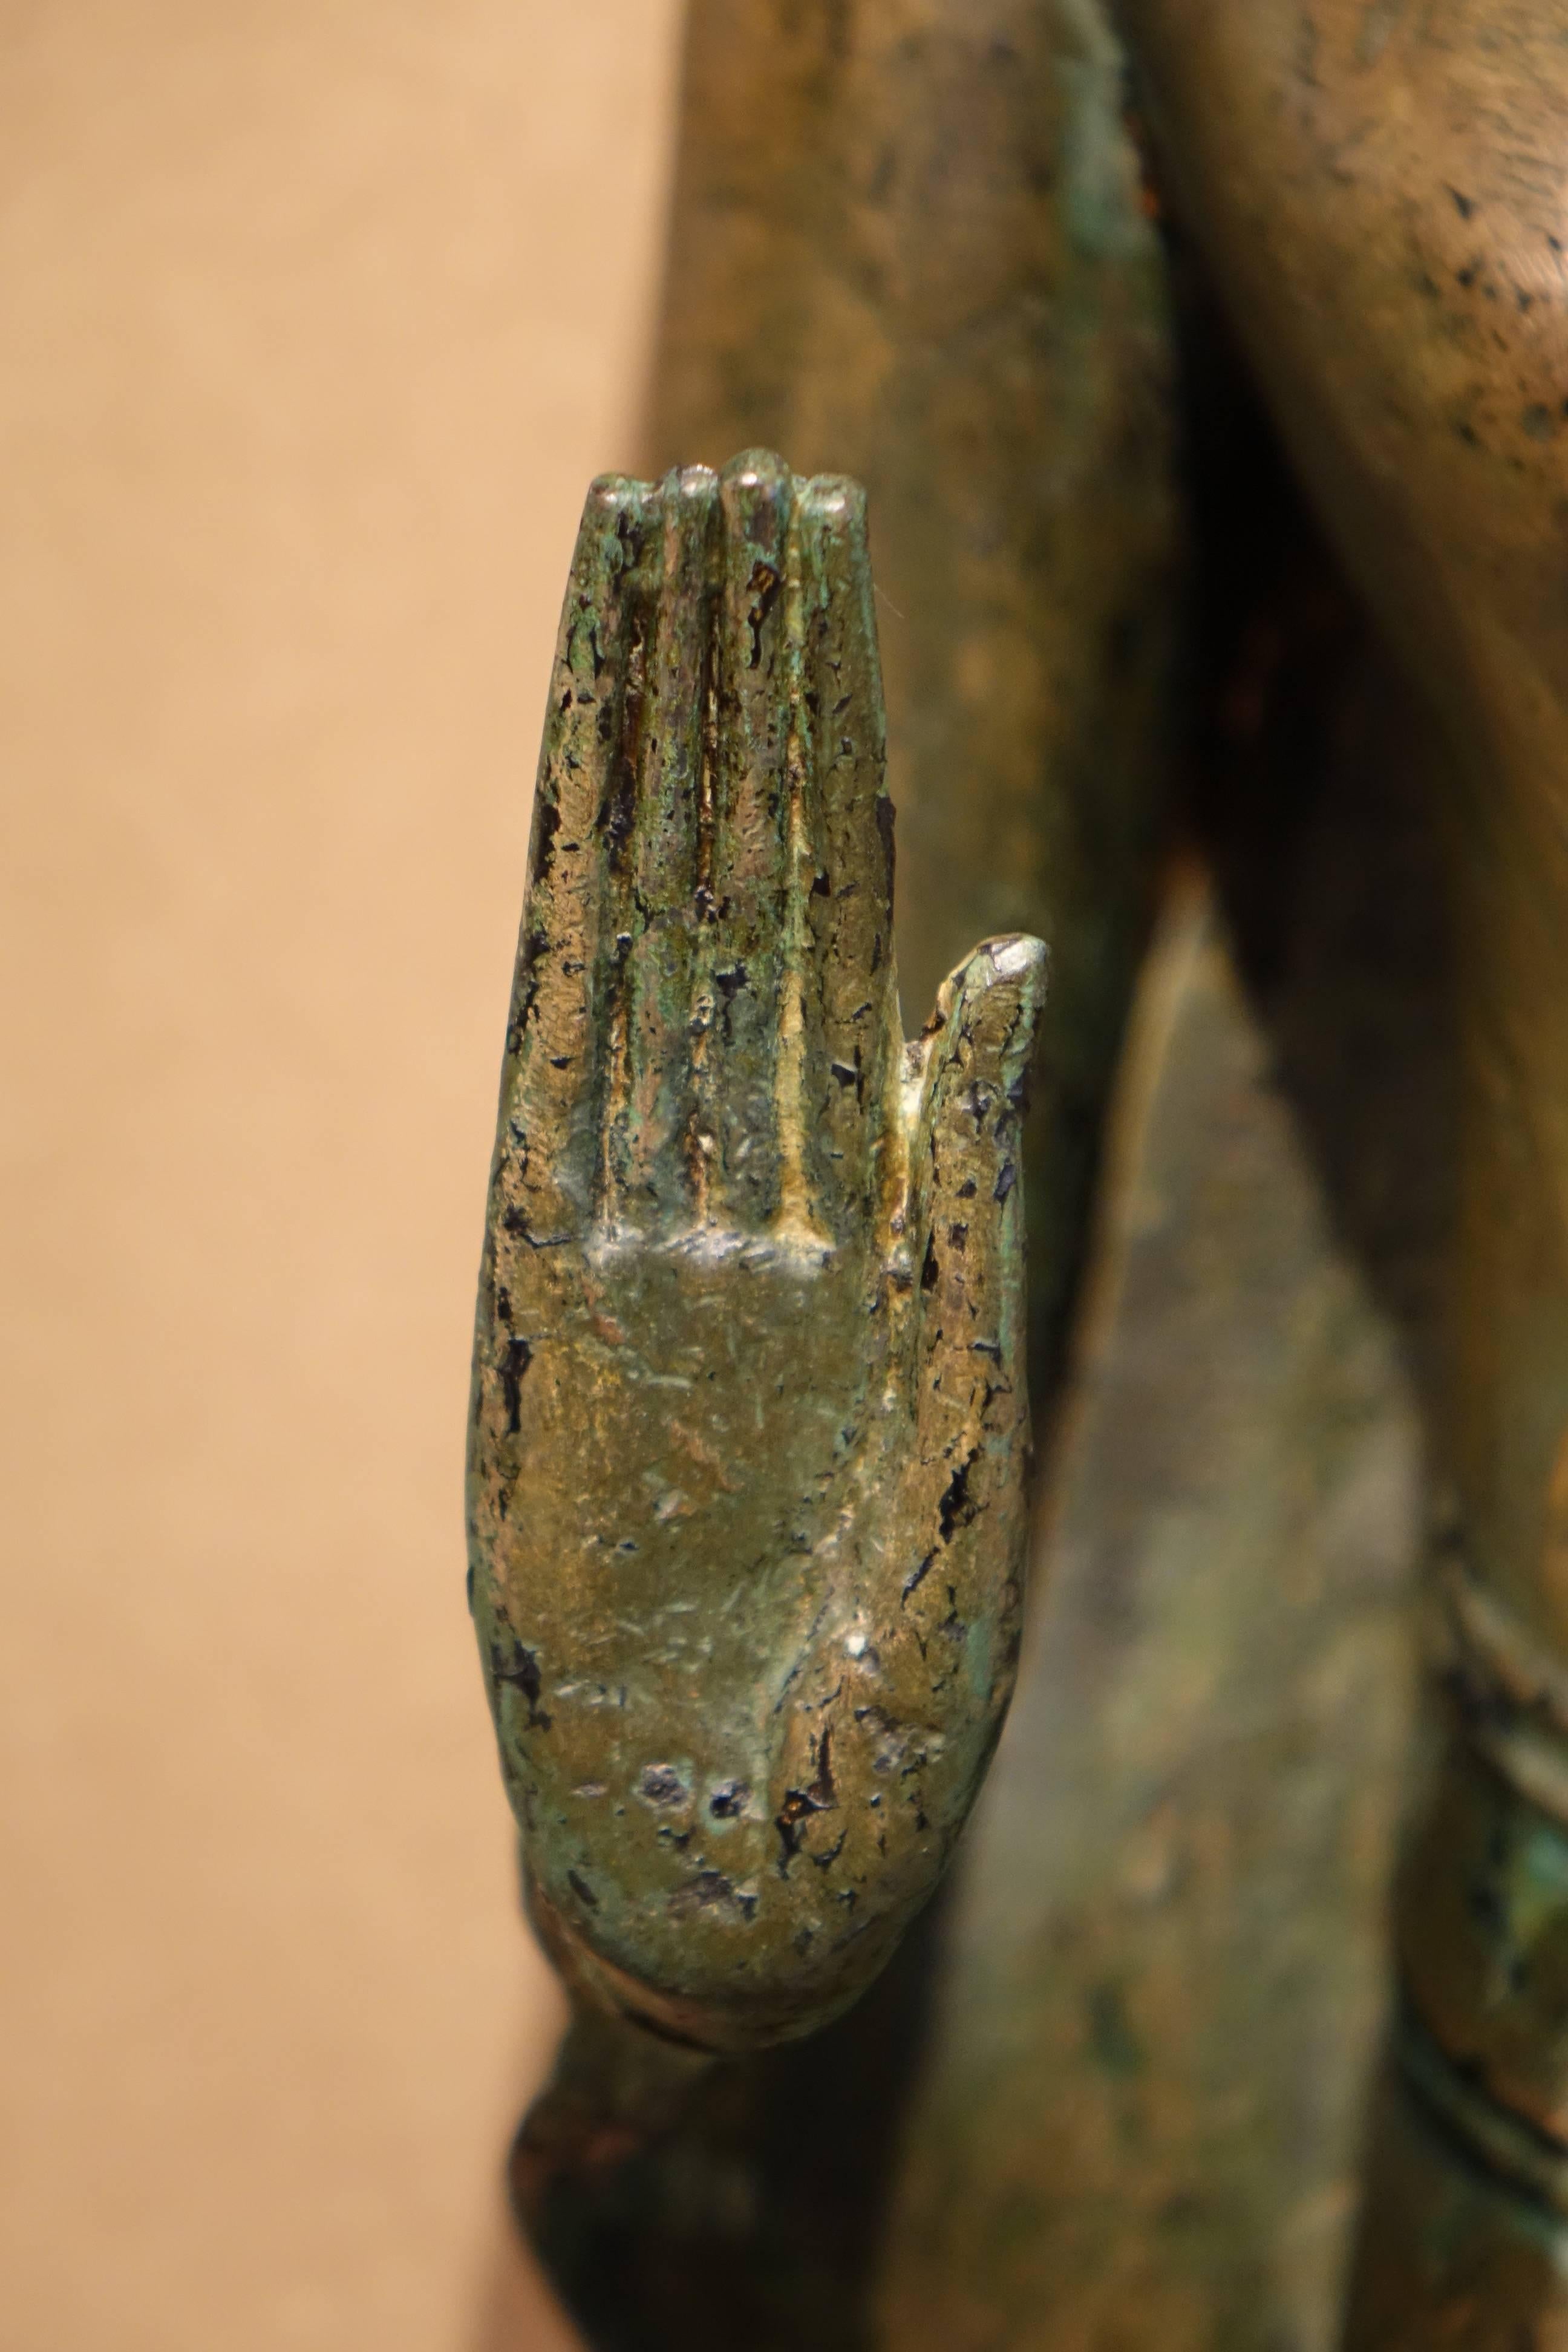 Blackened Ayutthaya Style Standing Bronze Figure of Buddha, Mid-17th Century, Thailand